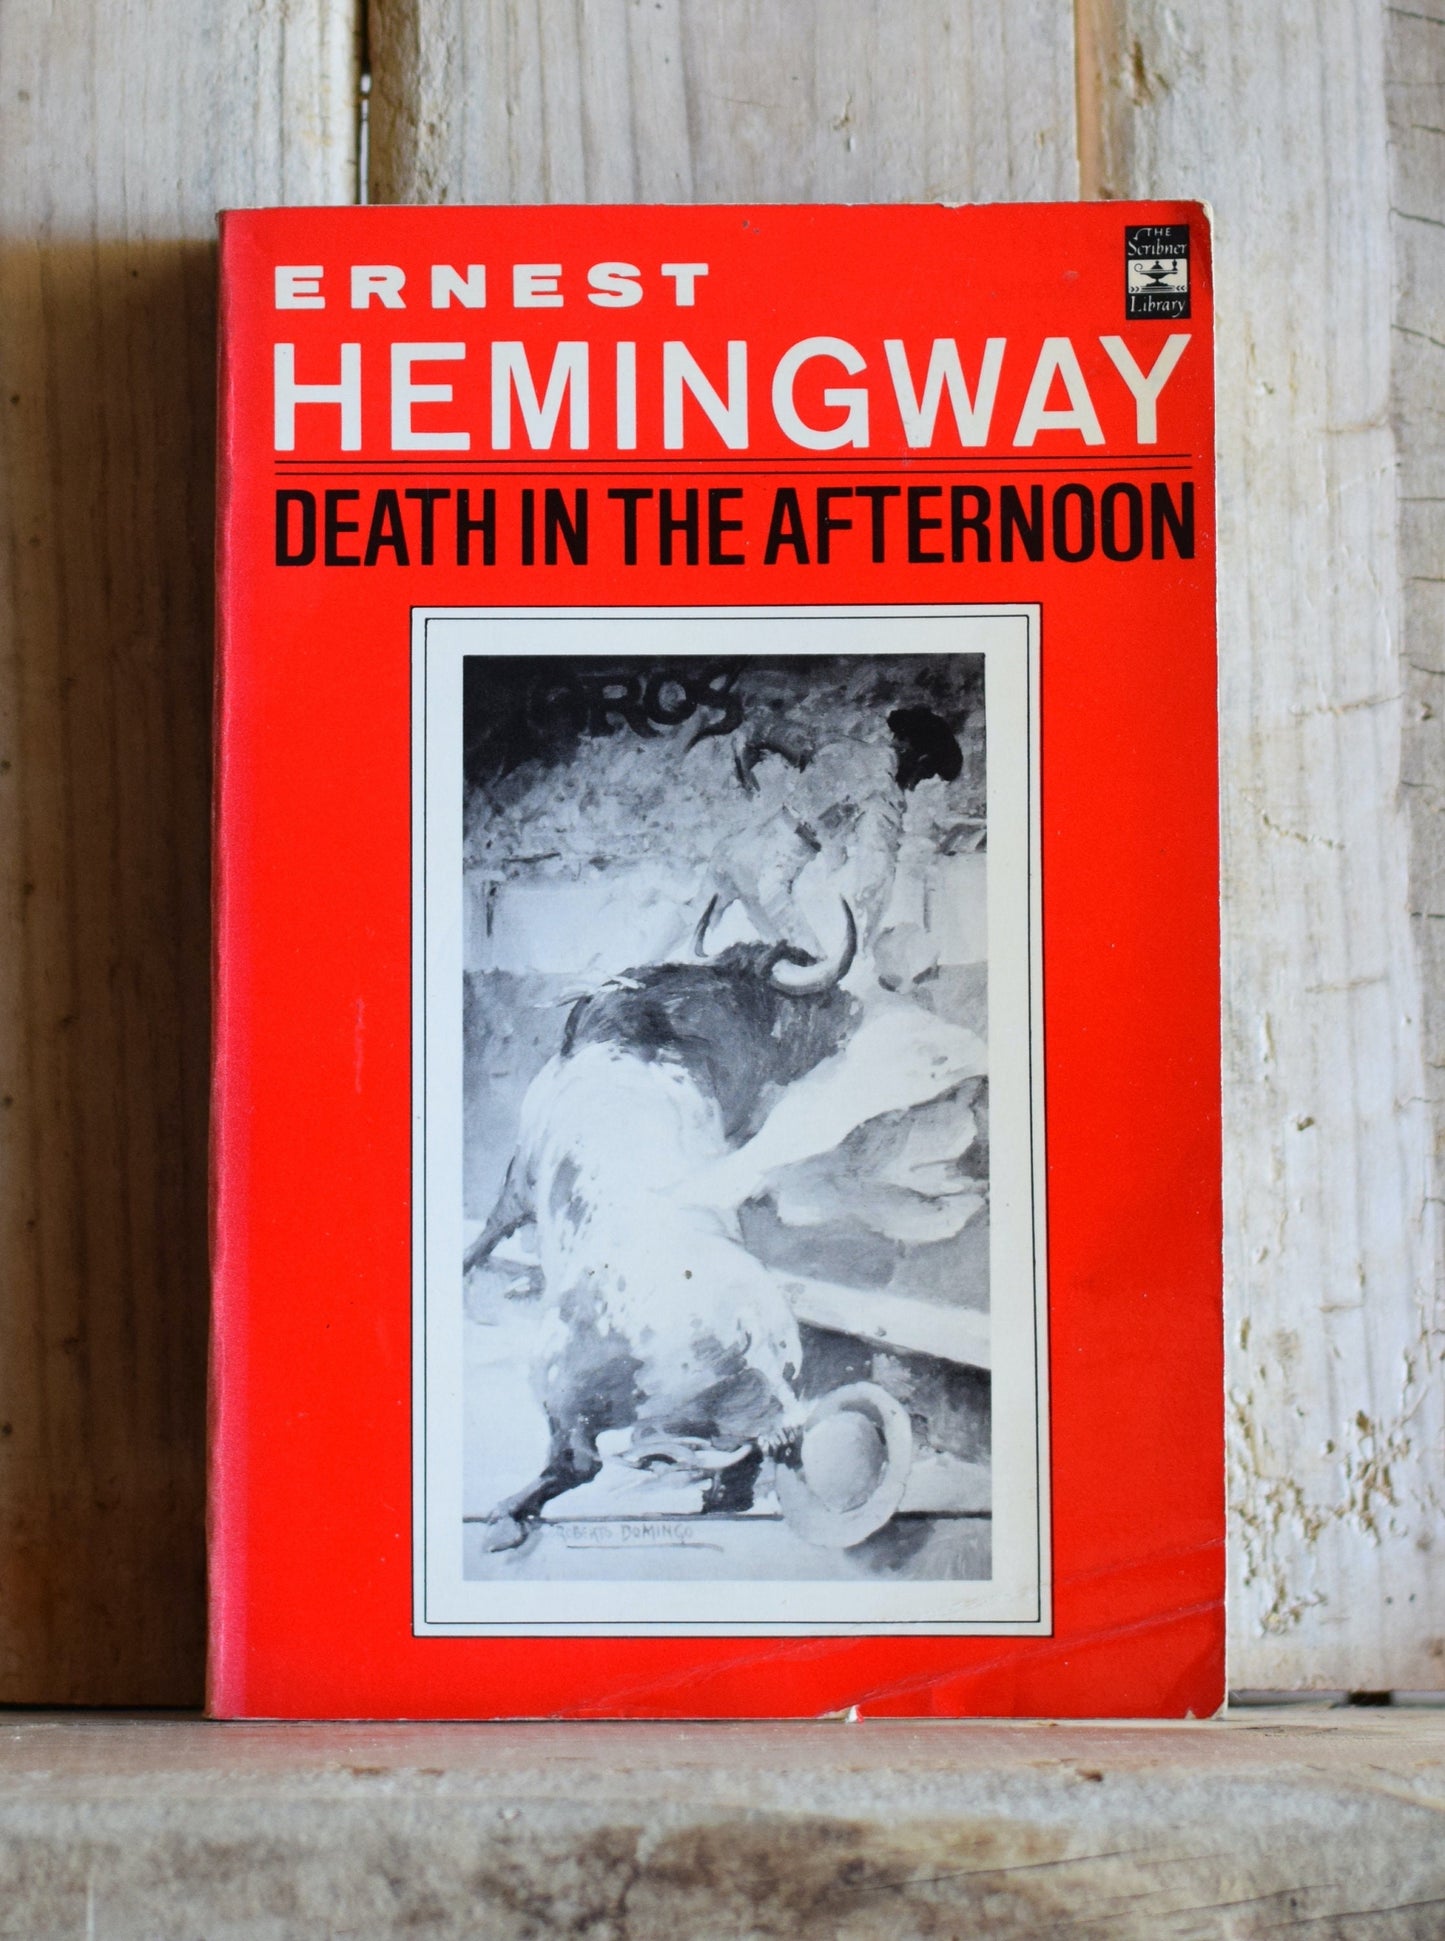 Vintage Fiction Paperback Novel: Ernest Hemingway - Death in the Afternoon